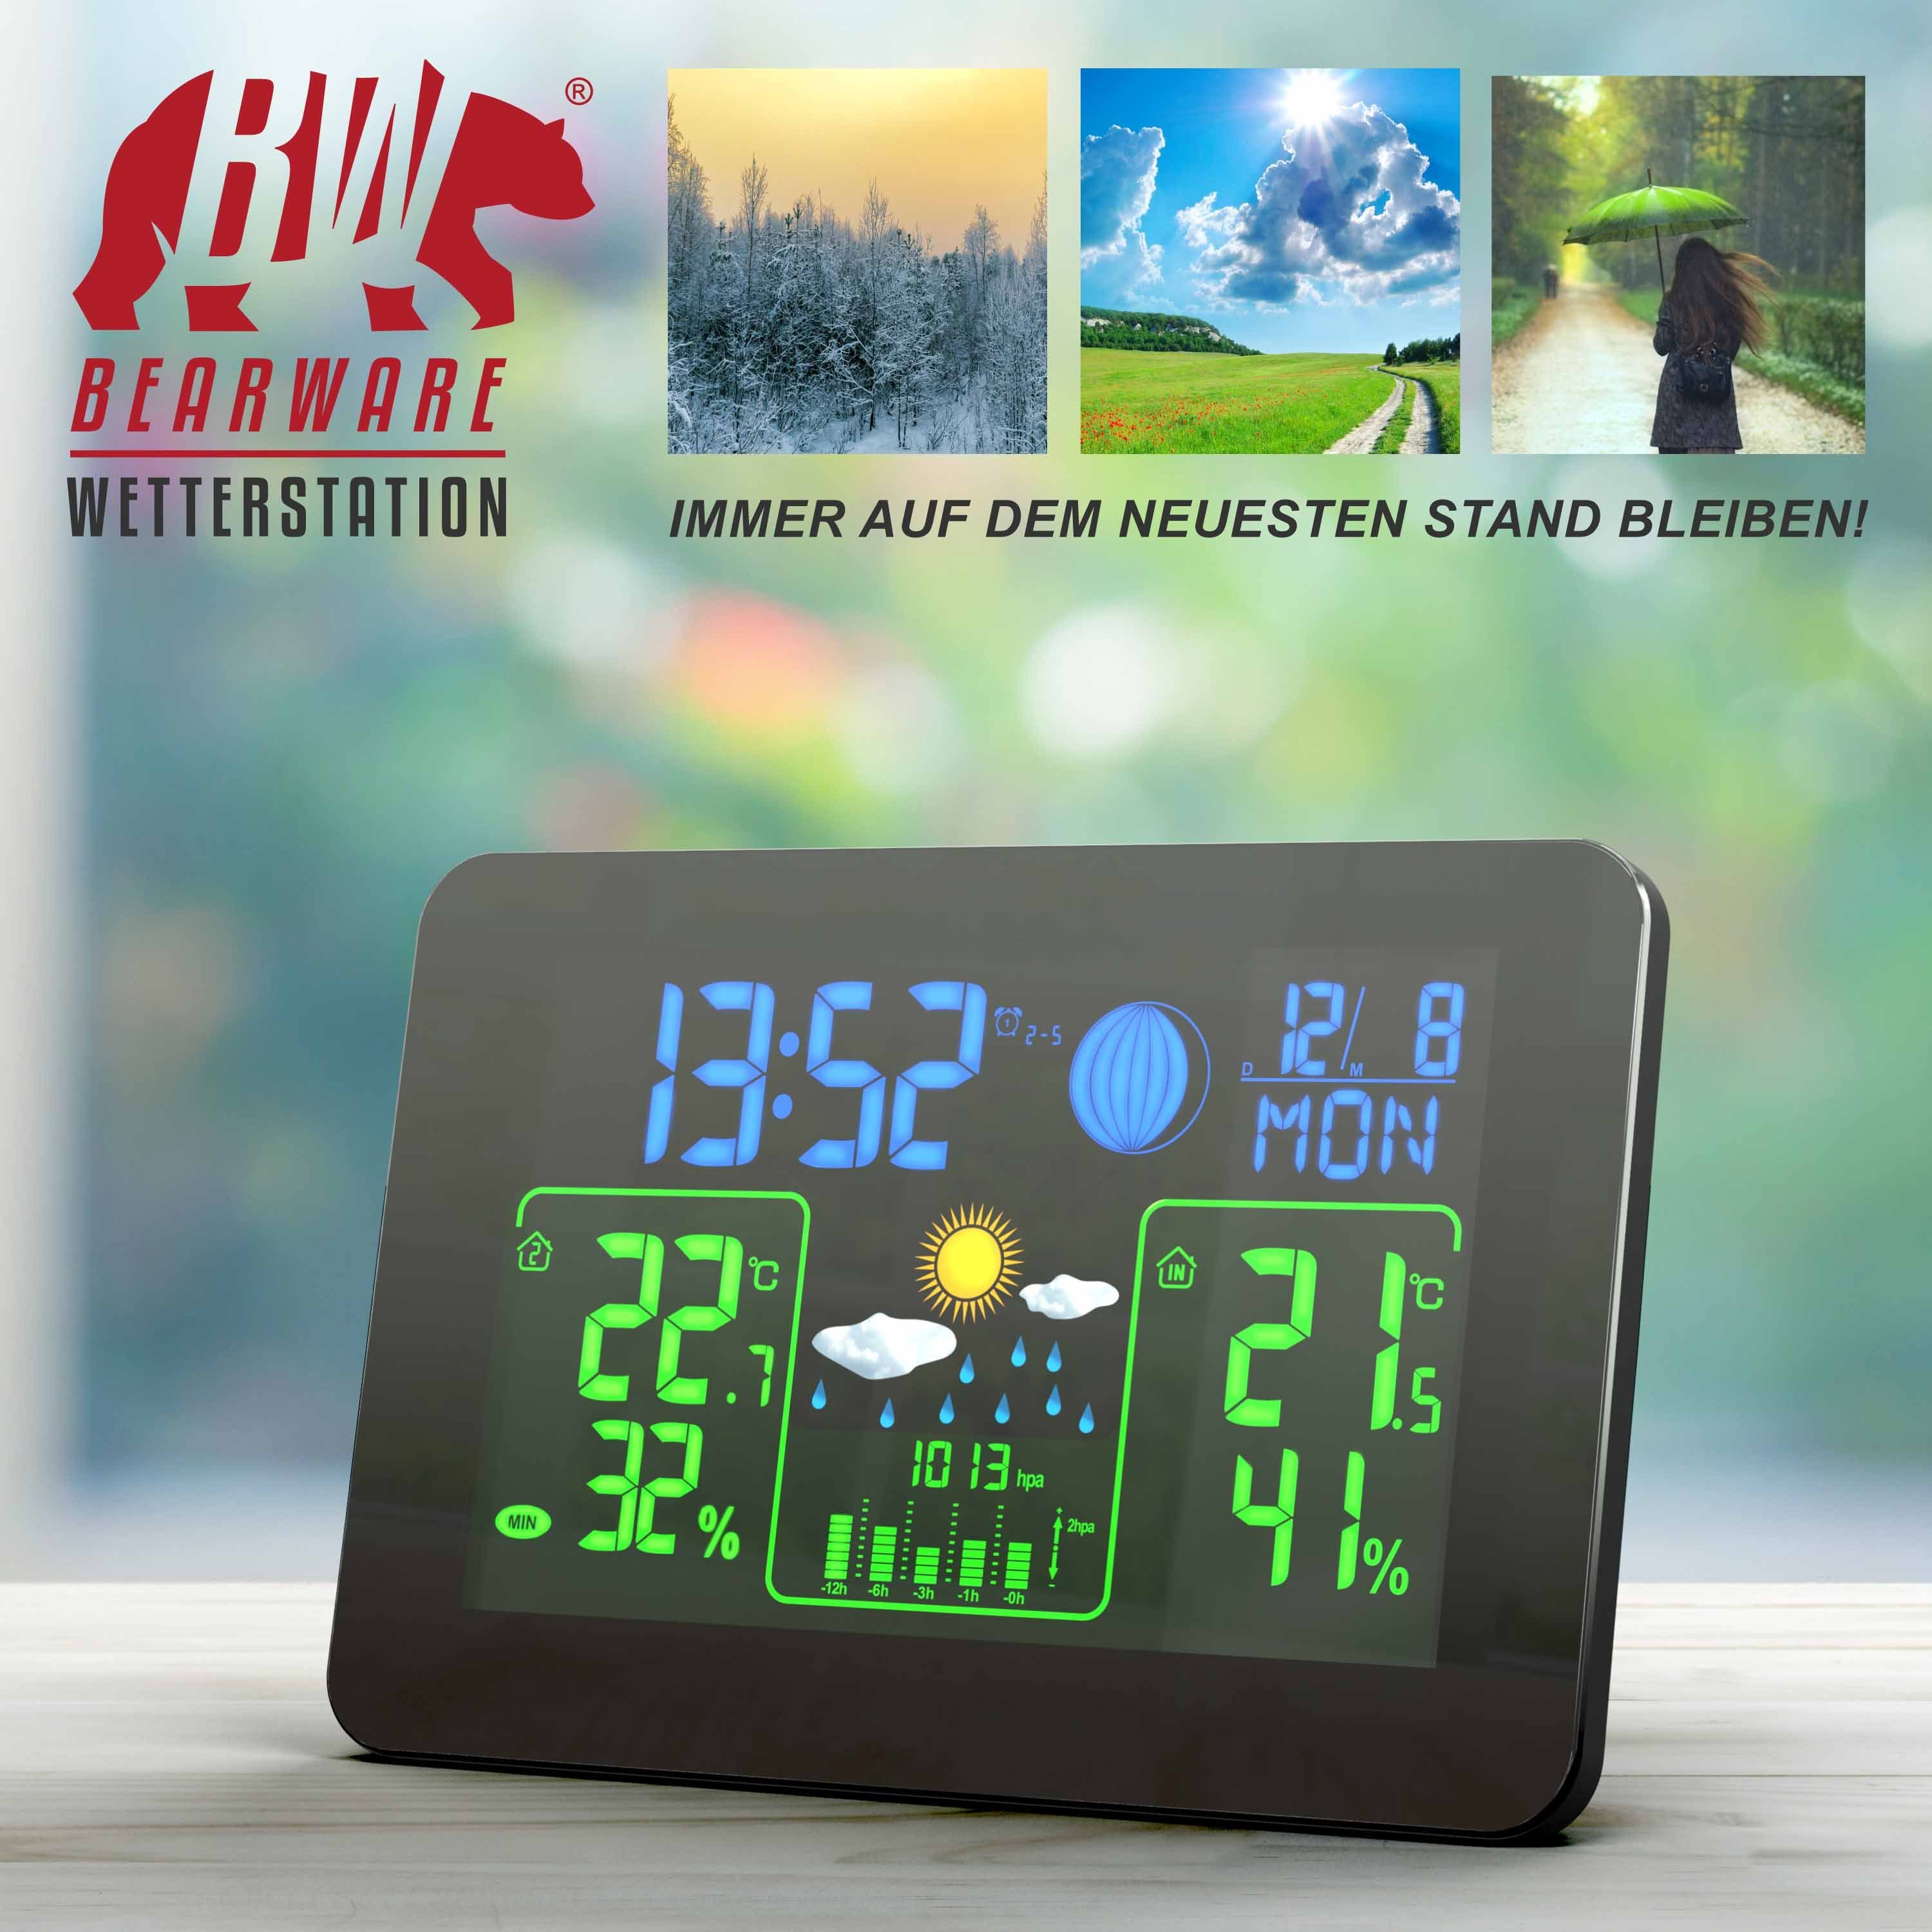 & BEARWARE mit Funk Display Barometer, Außensensor, Wetterstation Farb Wettervorhersage Außensensor (mit uvm)